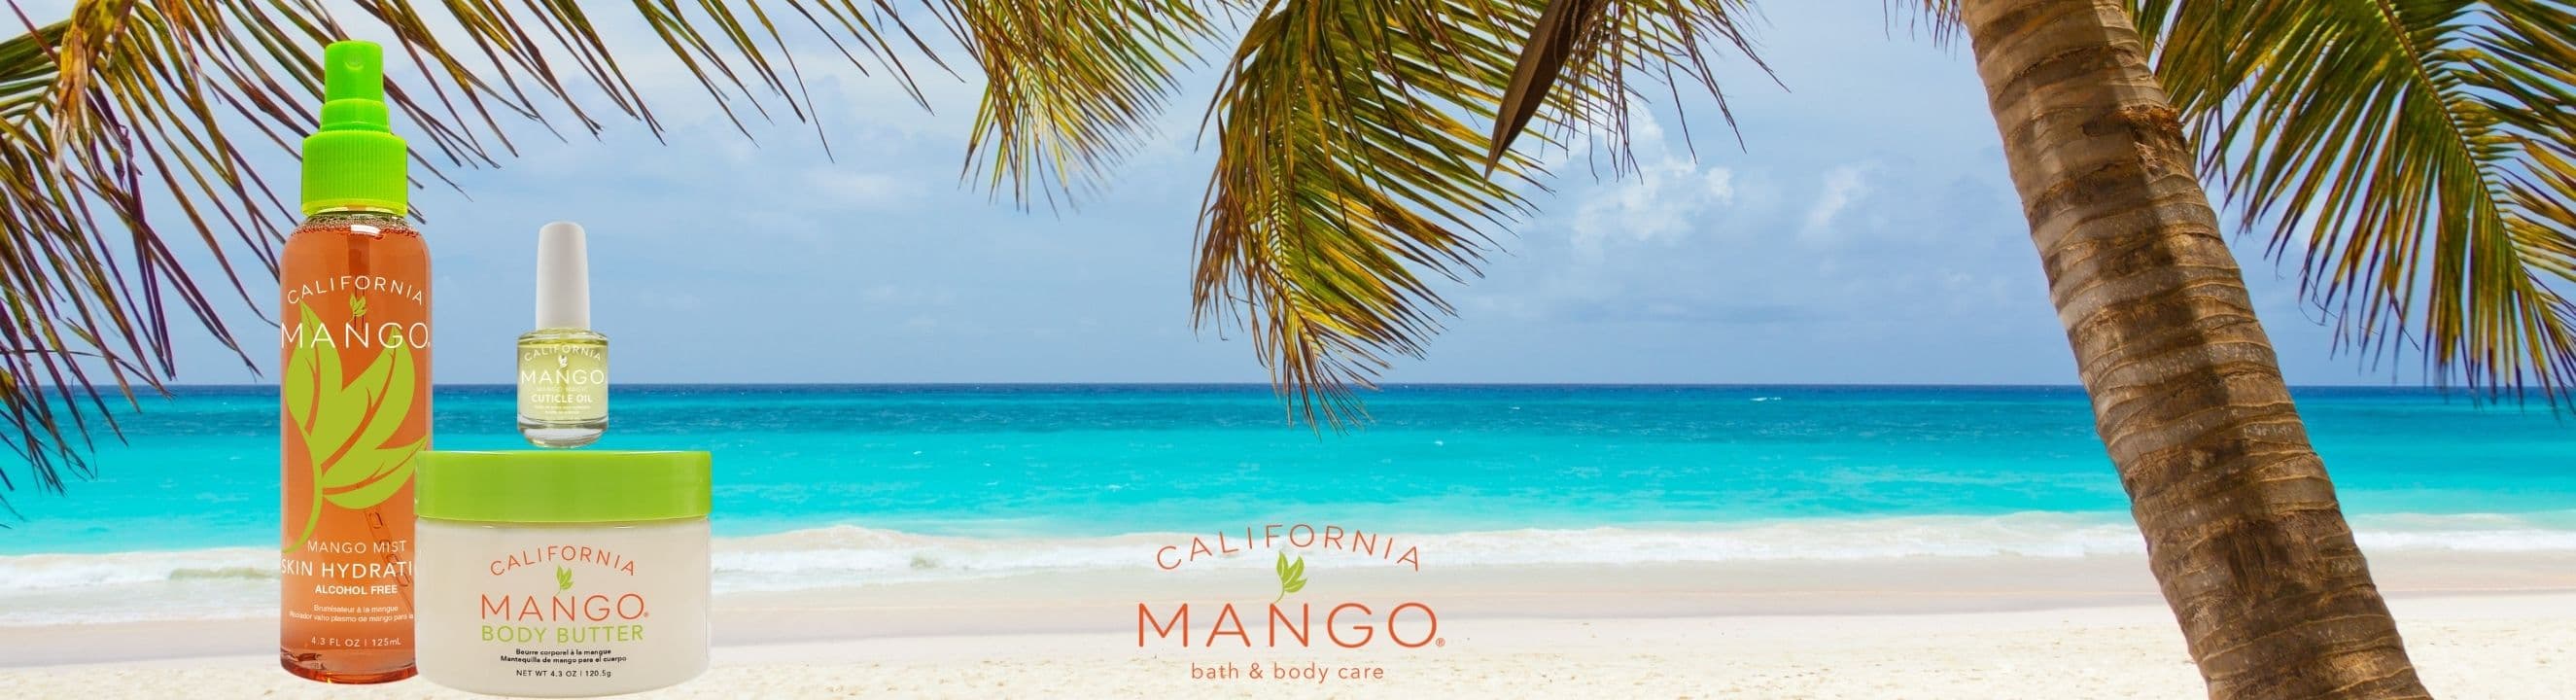 california-mango-collection